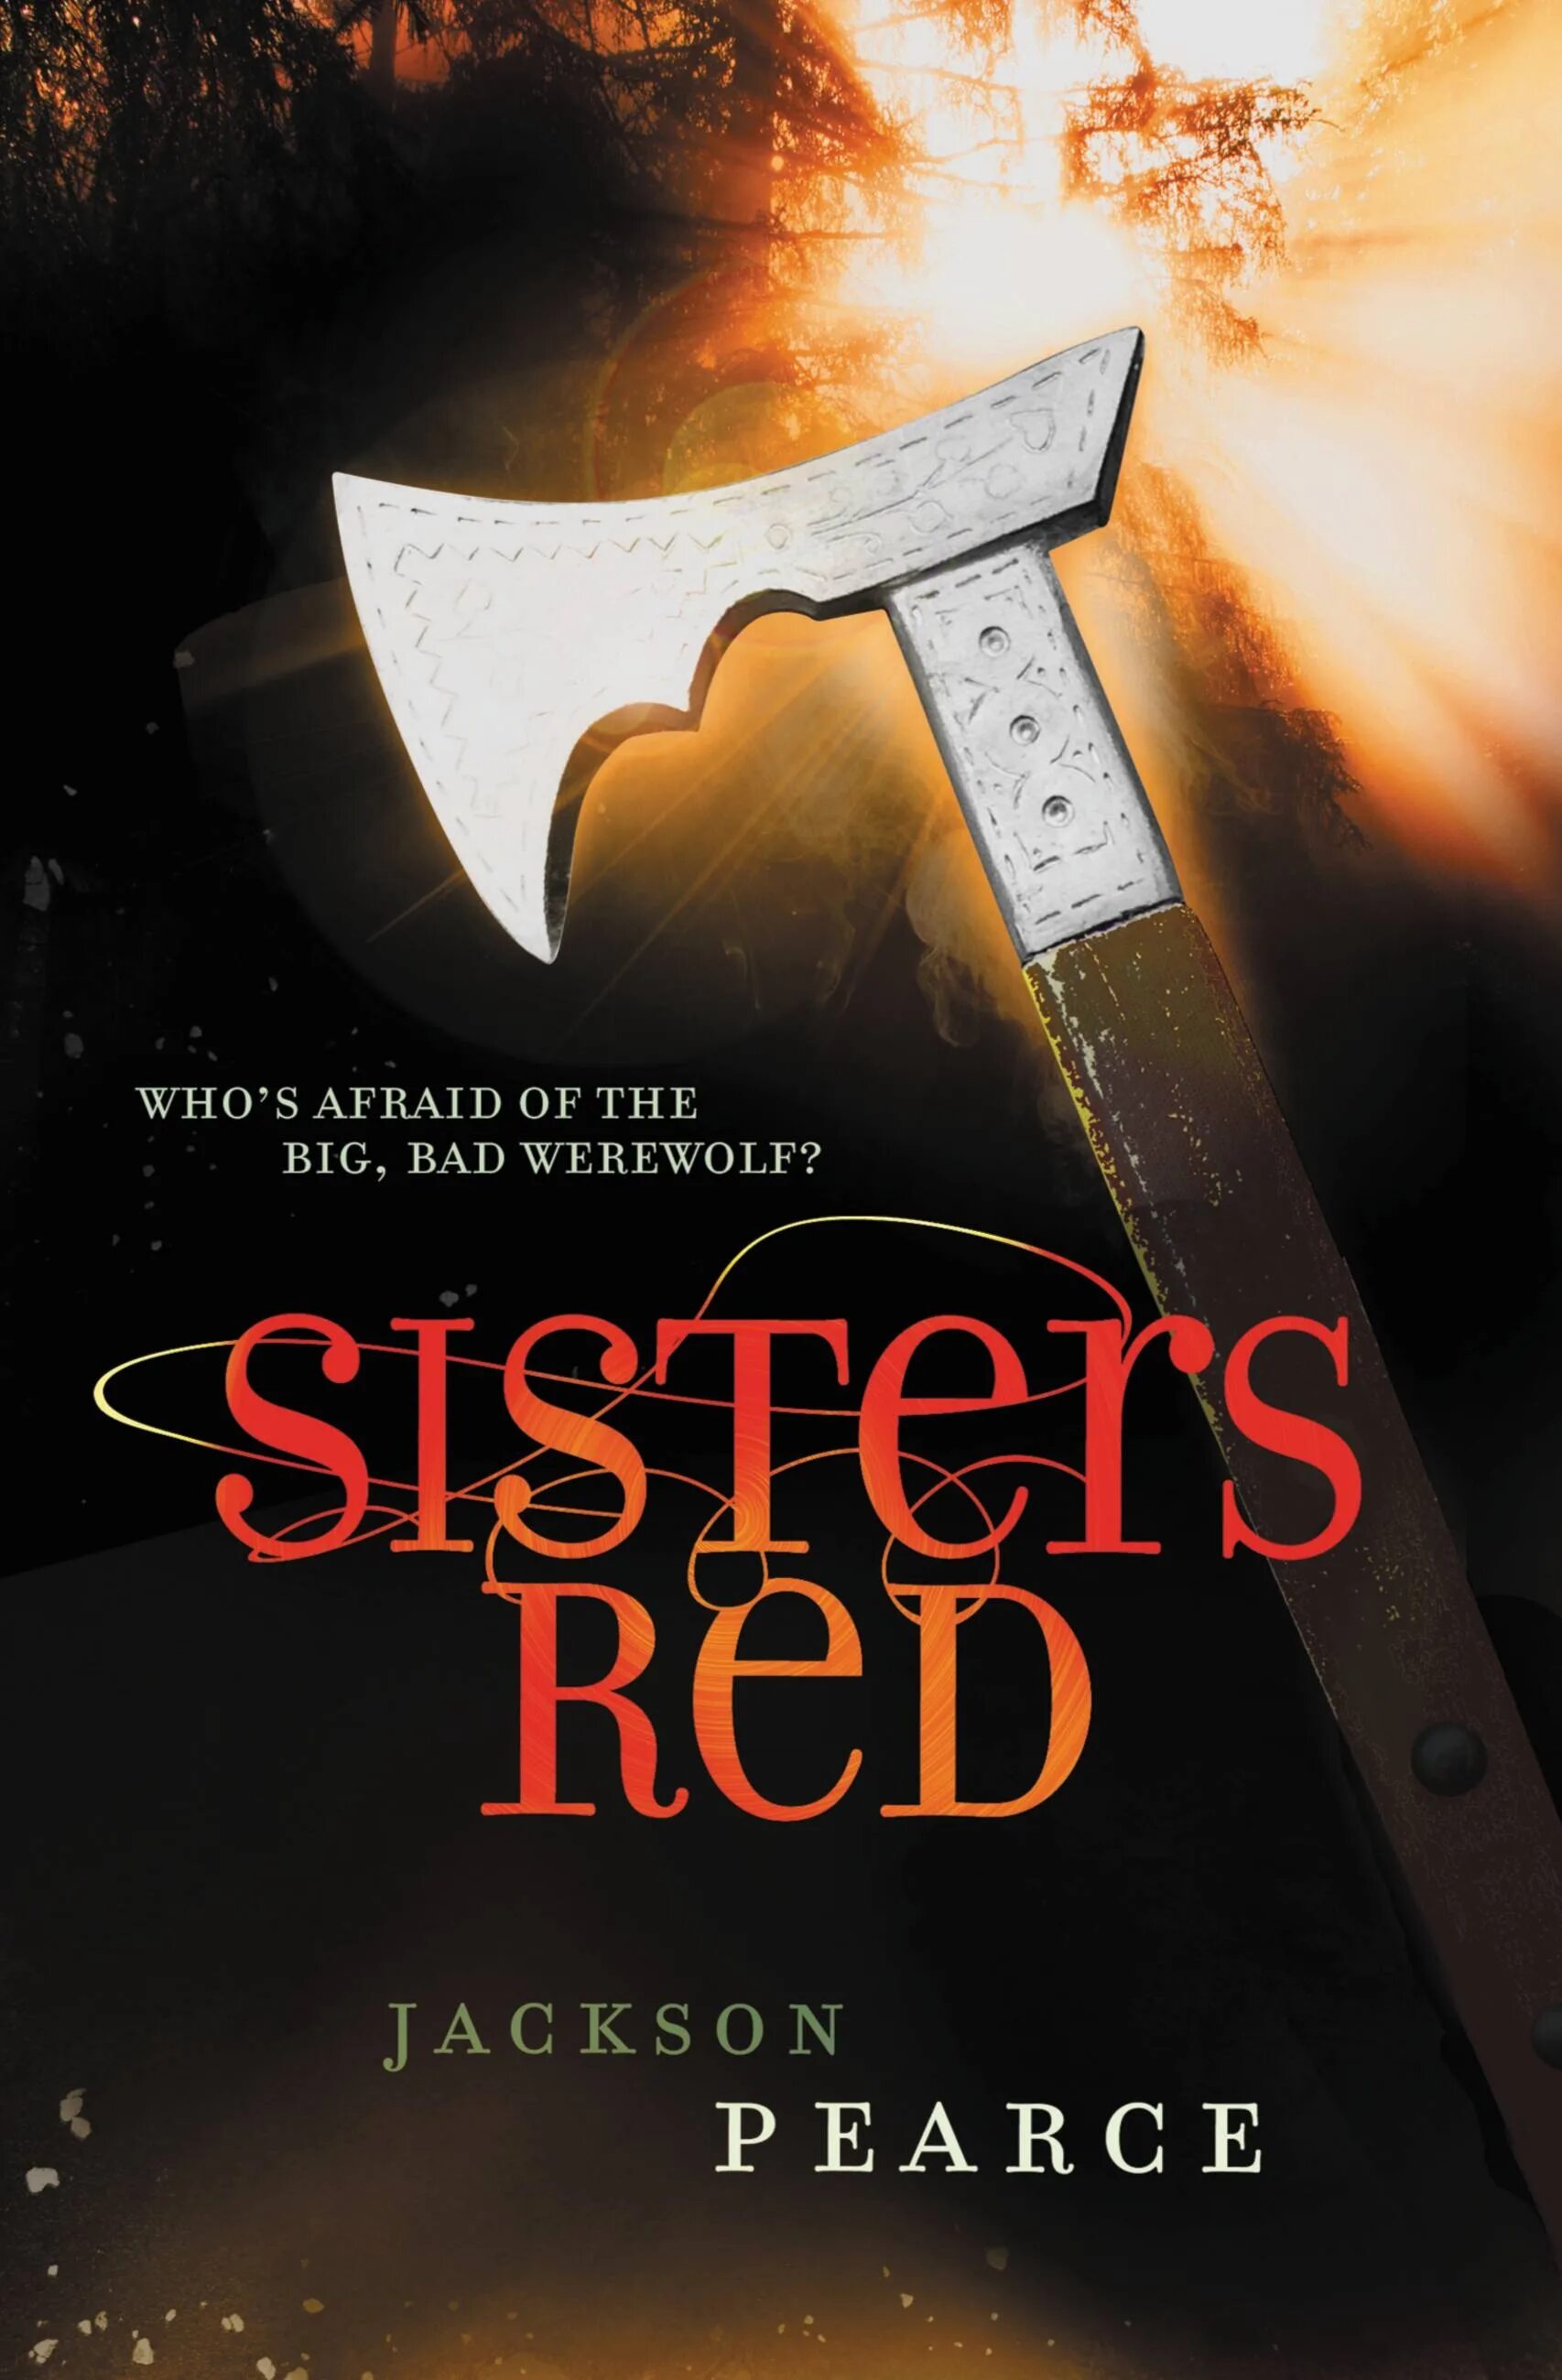 Red Sisterhood. Sister Red. Red sister